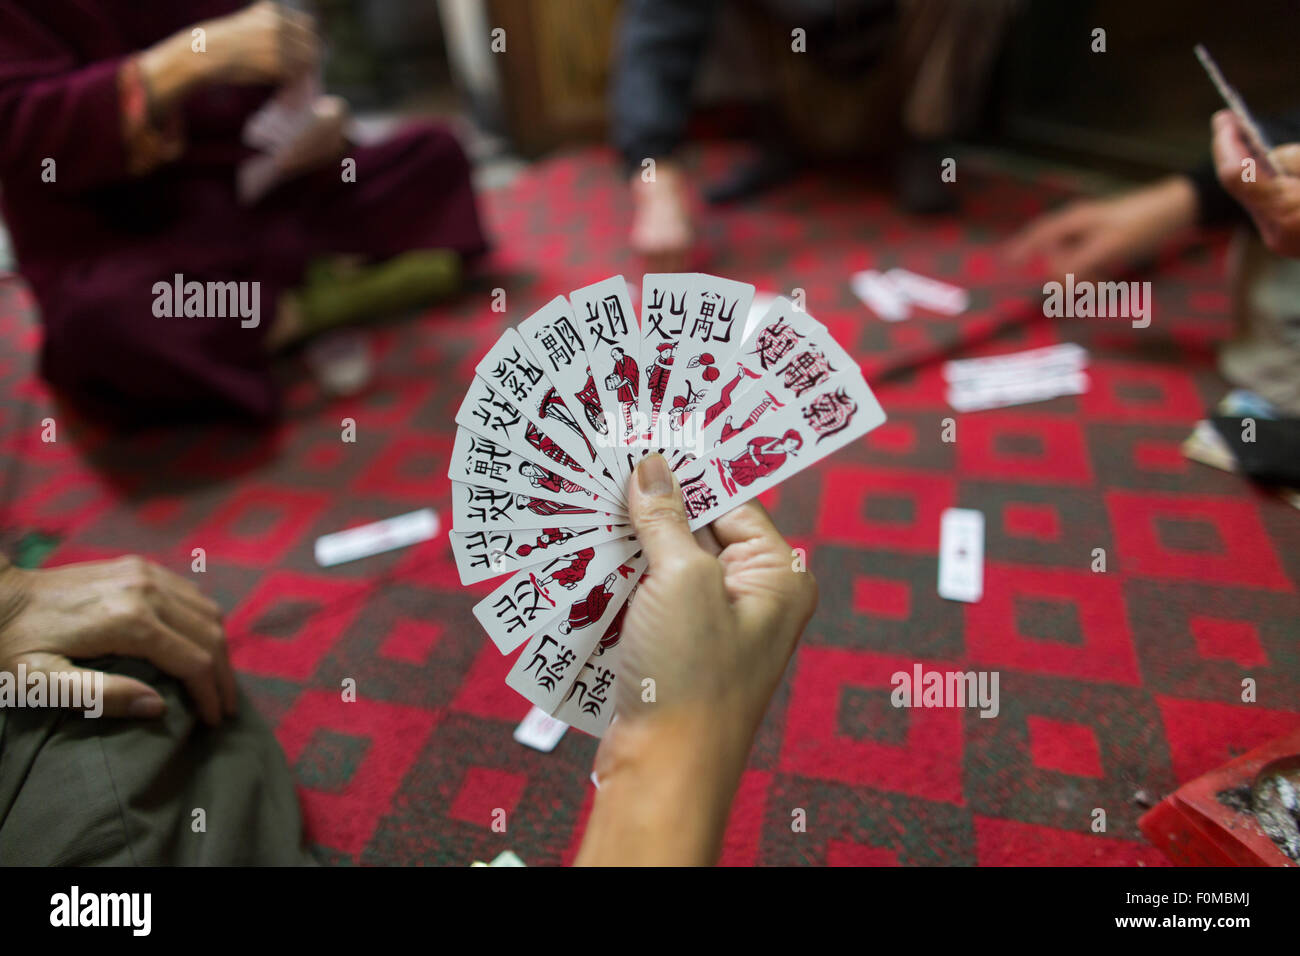 Carte da gioco cinesi immagini e fotografie stock ad alta risoluzione -  Alamy